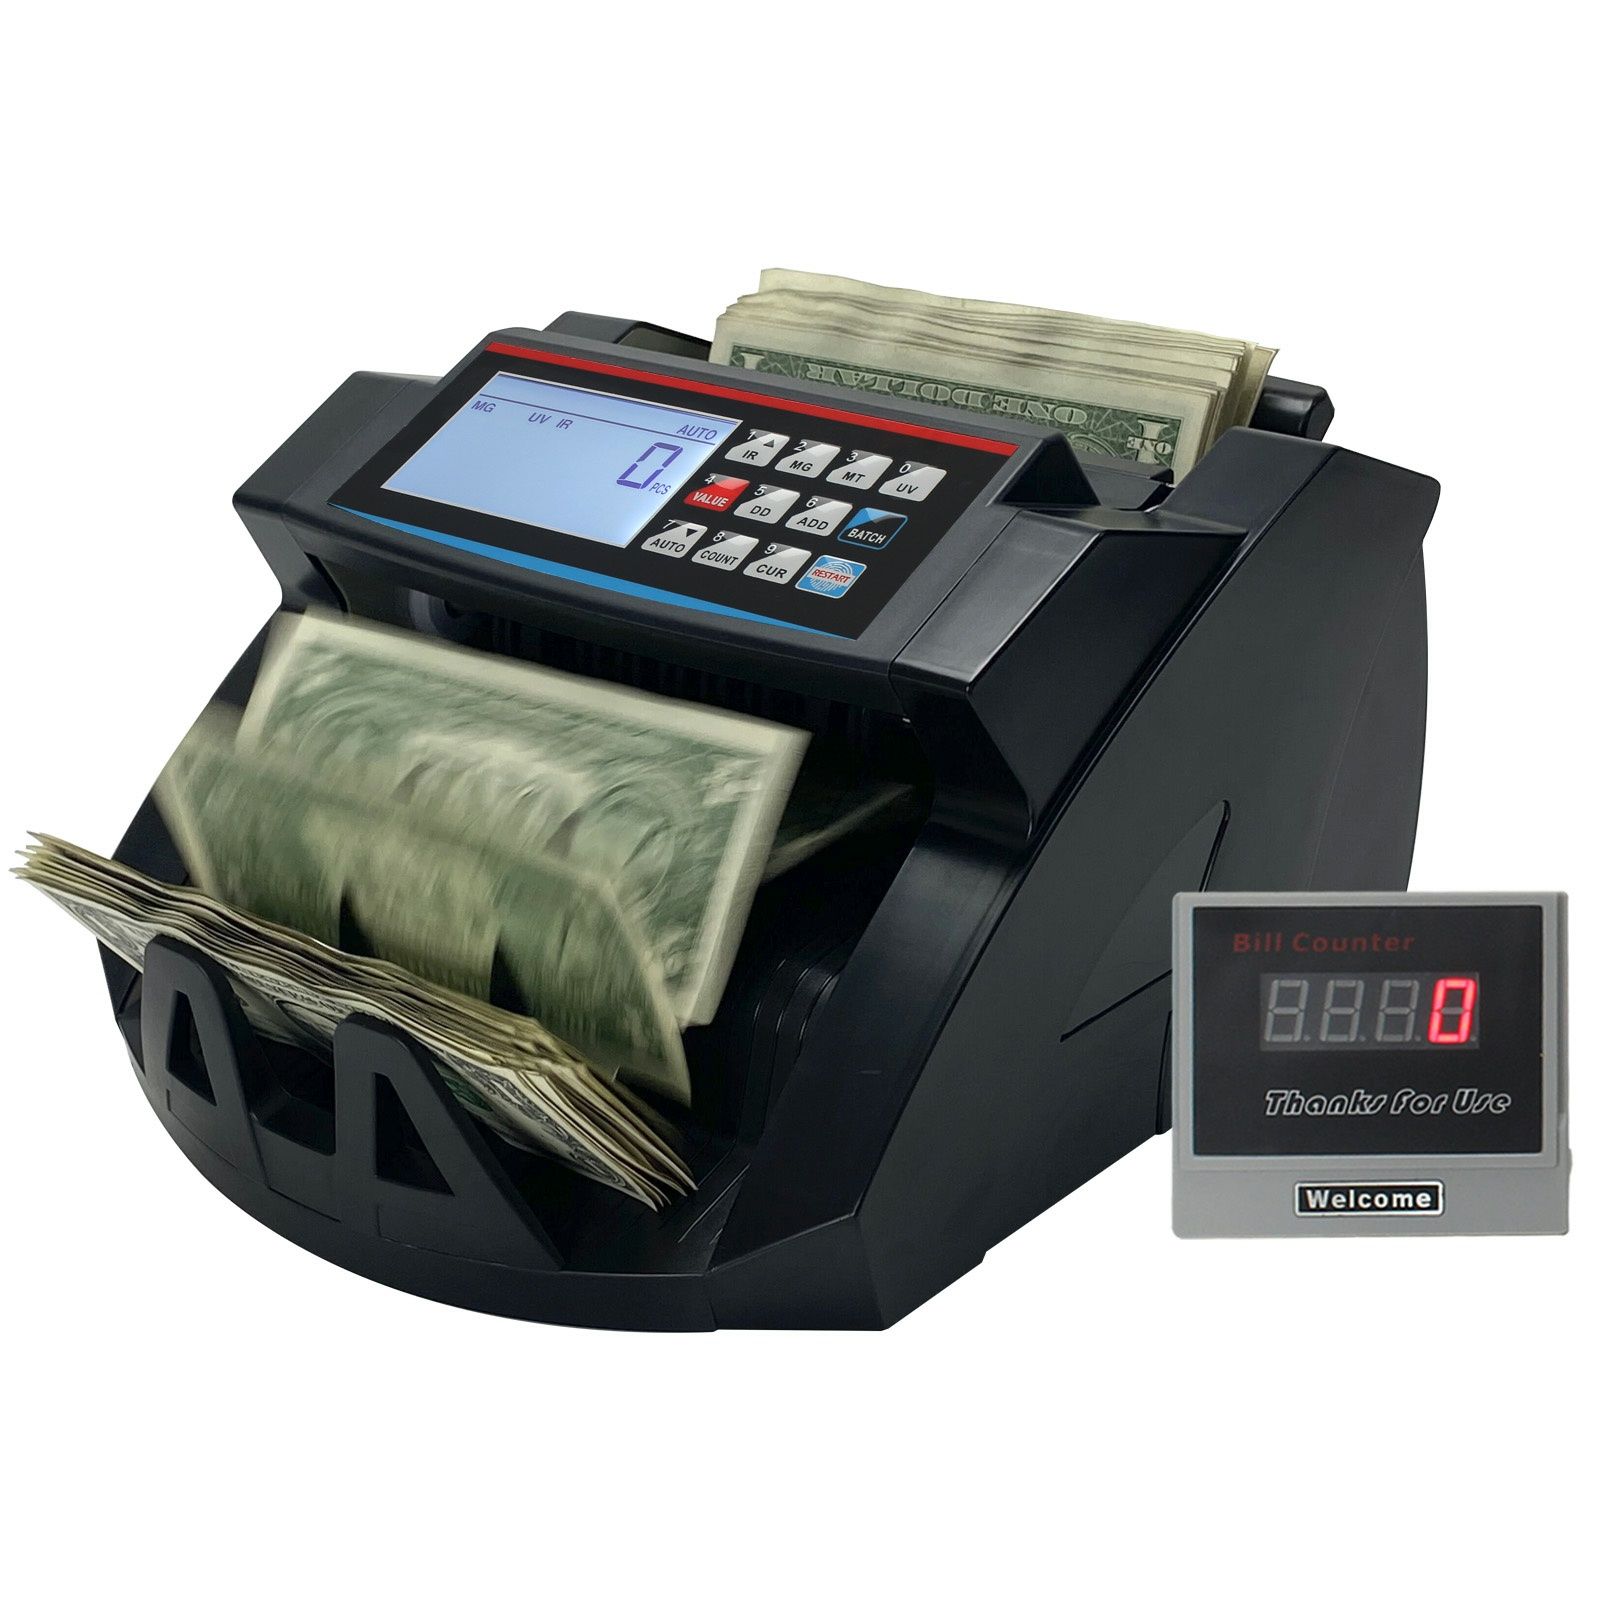 Pul sanidgan aparat) Счетная машинка (машинка для счета денег) AI-2100